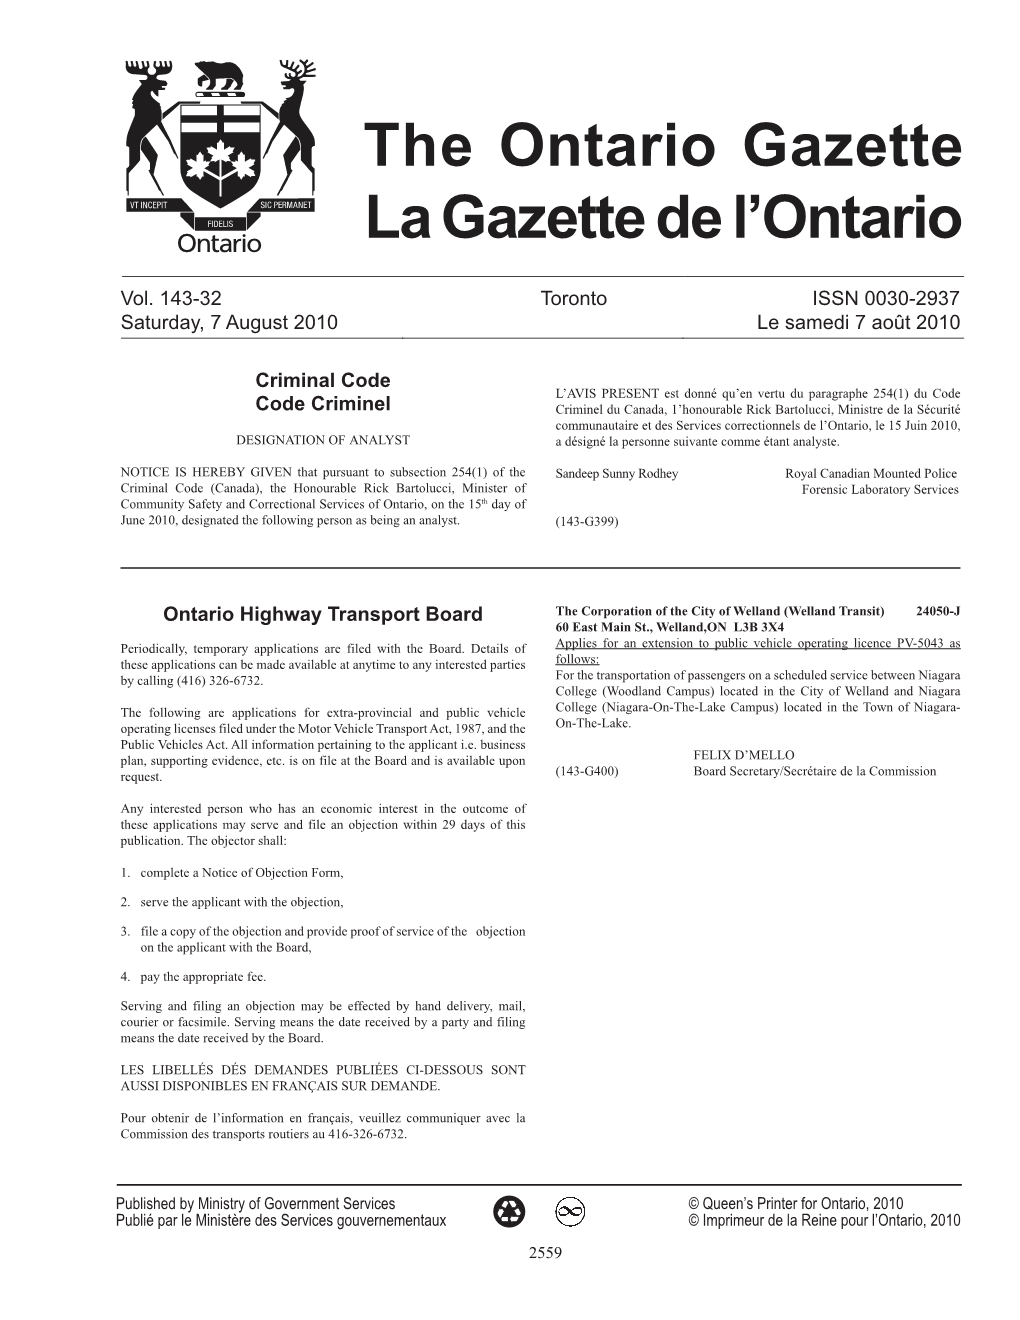 Ontario Gazette Volume 143 Issue 32, La Gazette De L'ontario Volume 143